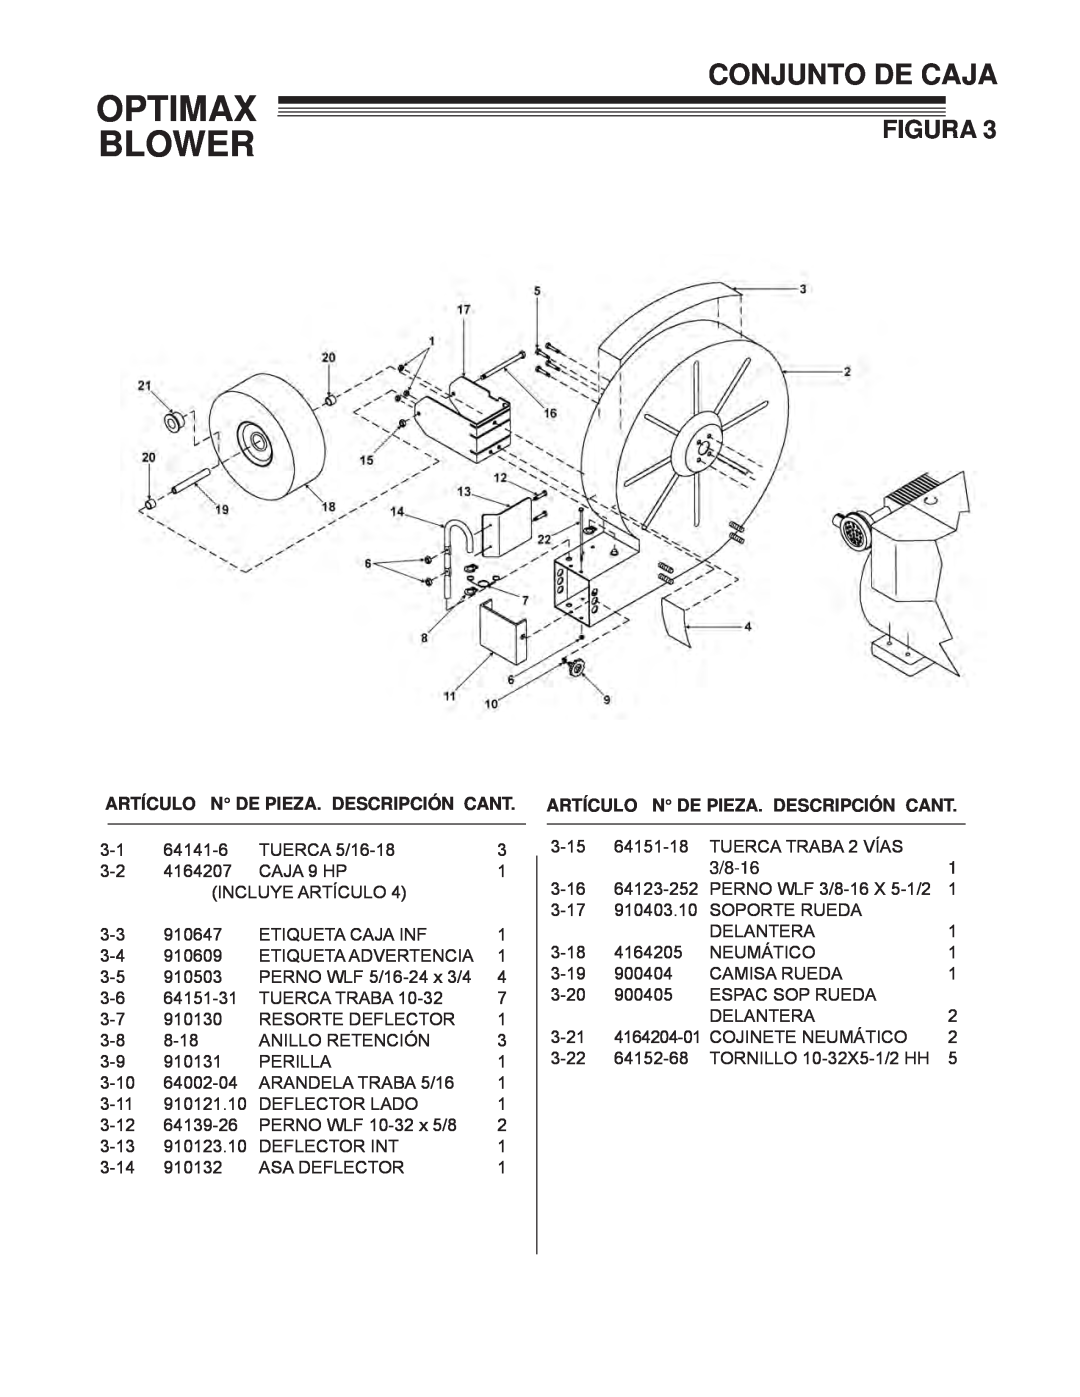 Little Wonder LB900-00-01 technical manual Conjunto De Caja, Optimax Blower, Figura, Artículo N De Pieza. Descripción Cant 